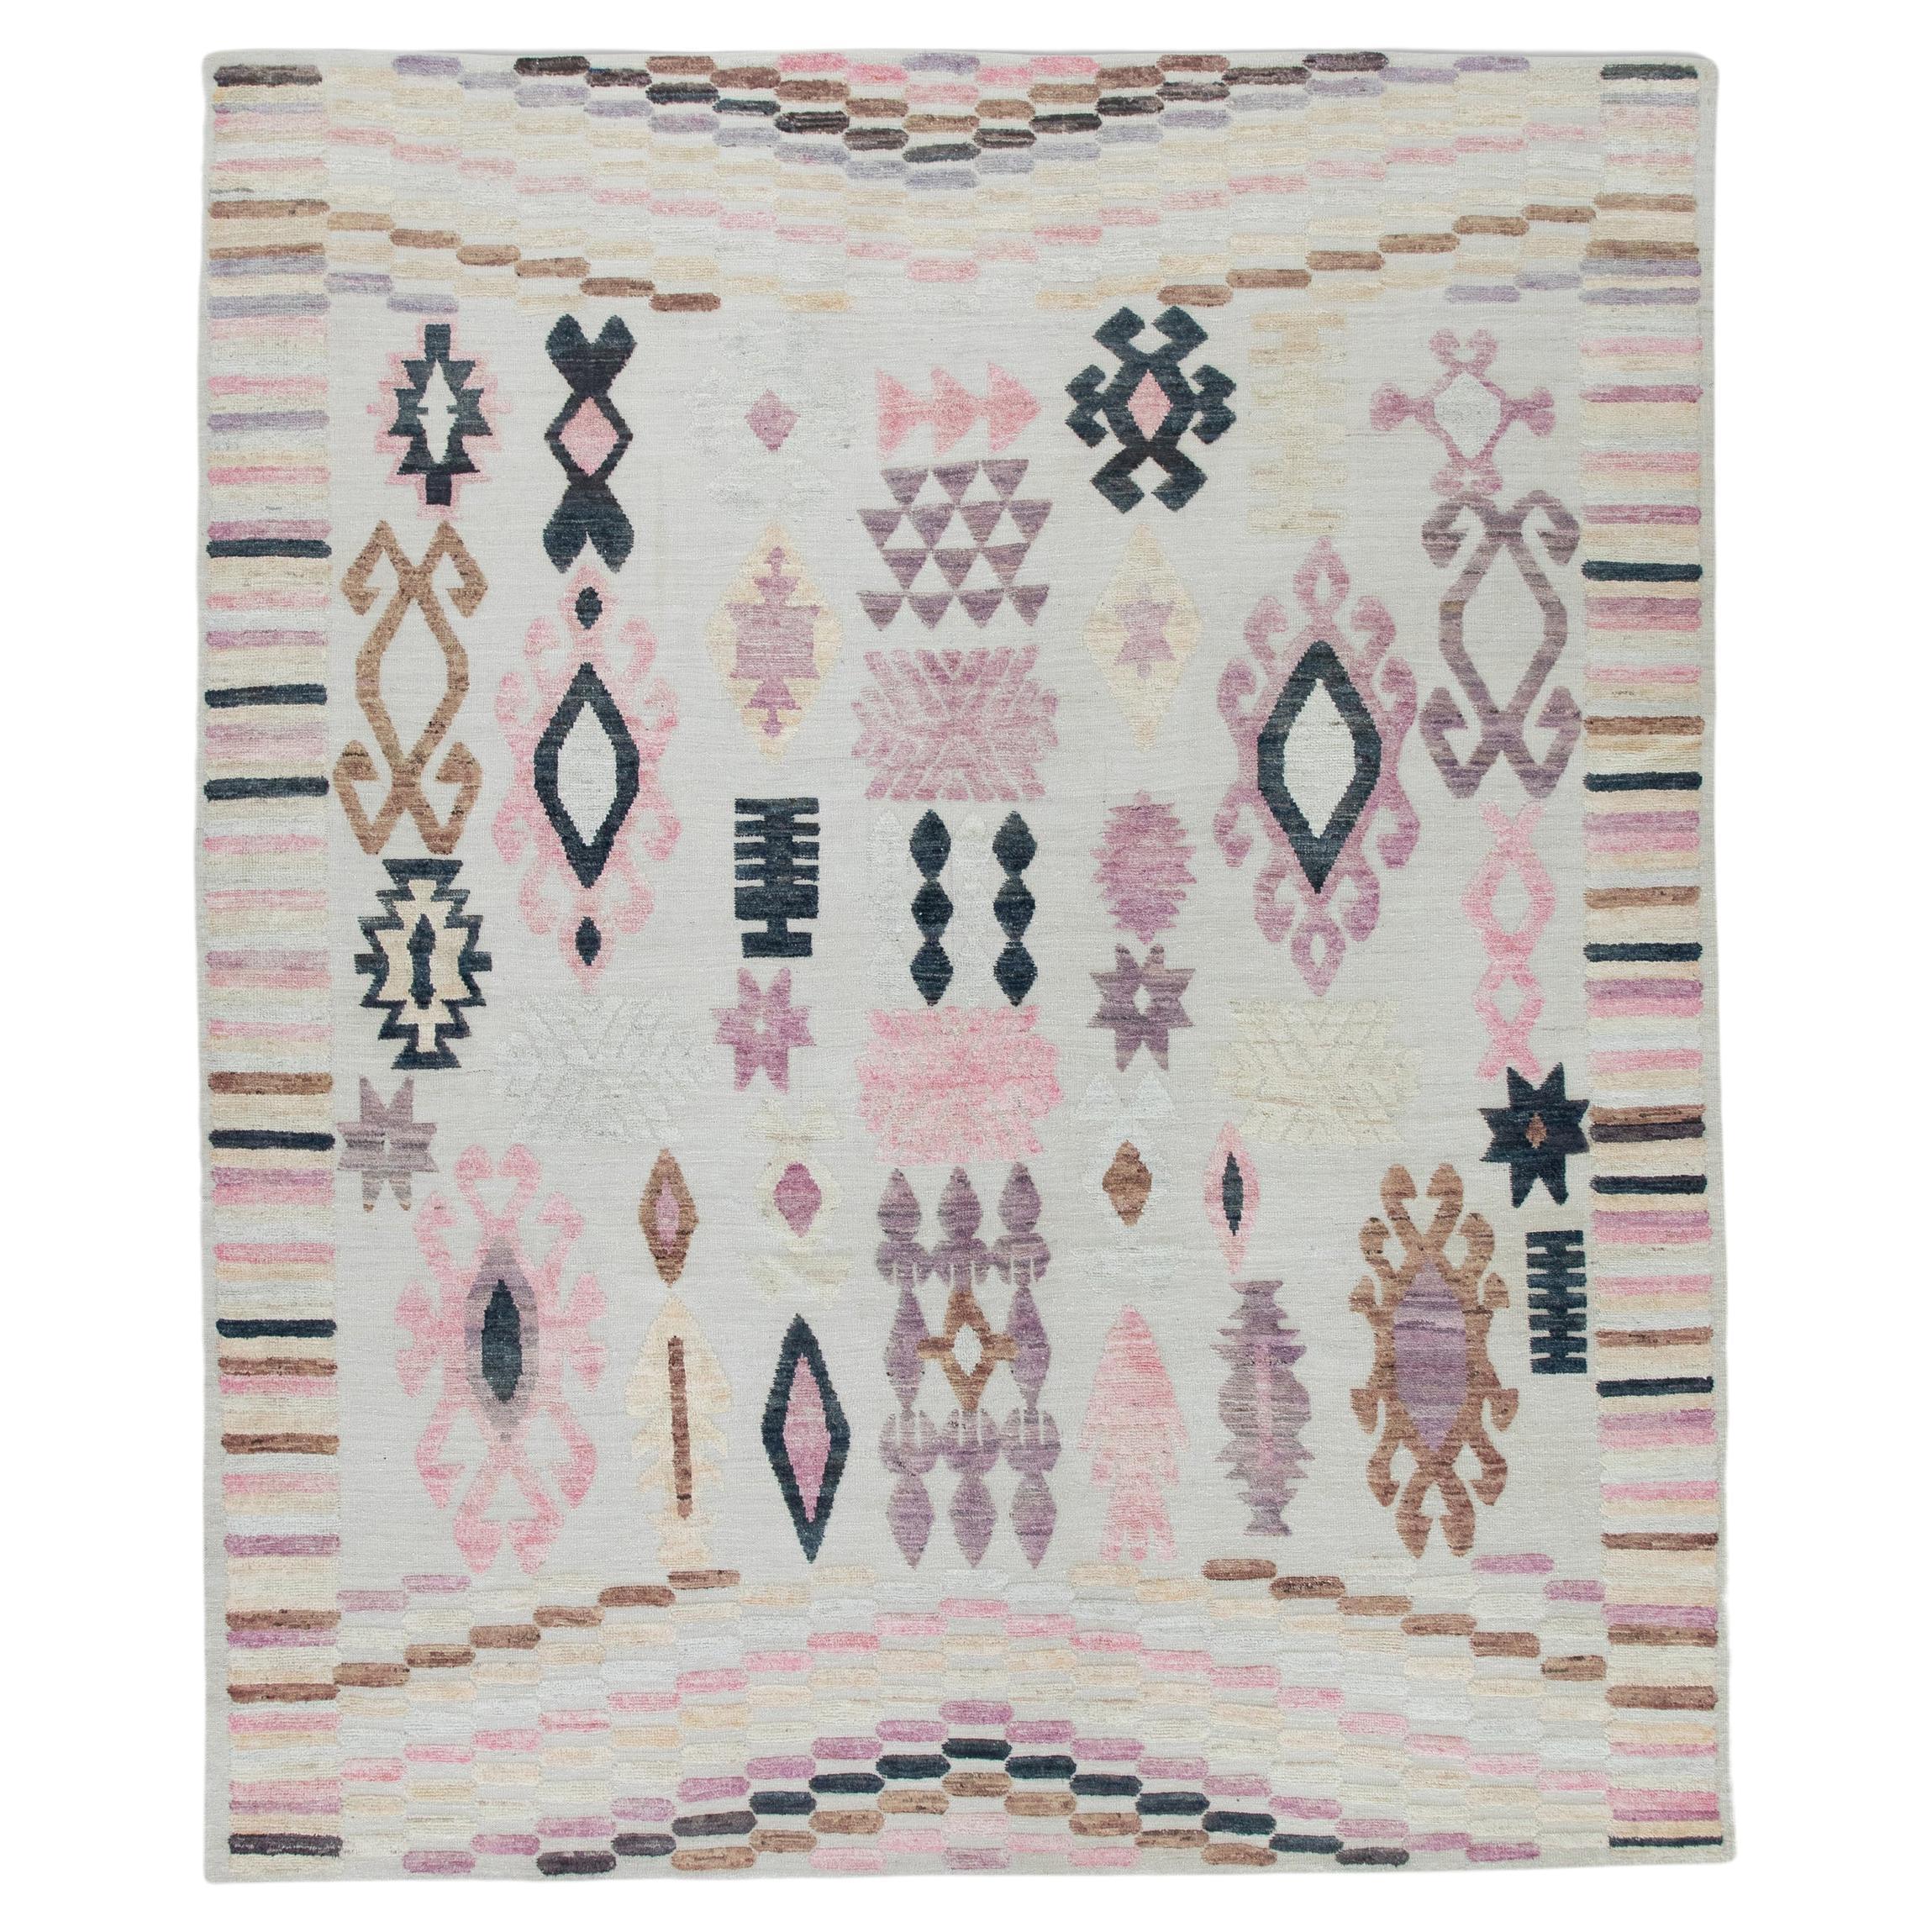 Tapis en laine tissé à la main à motifs géométriques roses, violets et bruns 9'11" X 11'10".